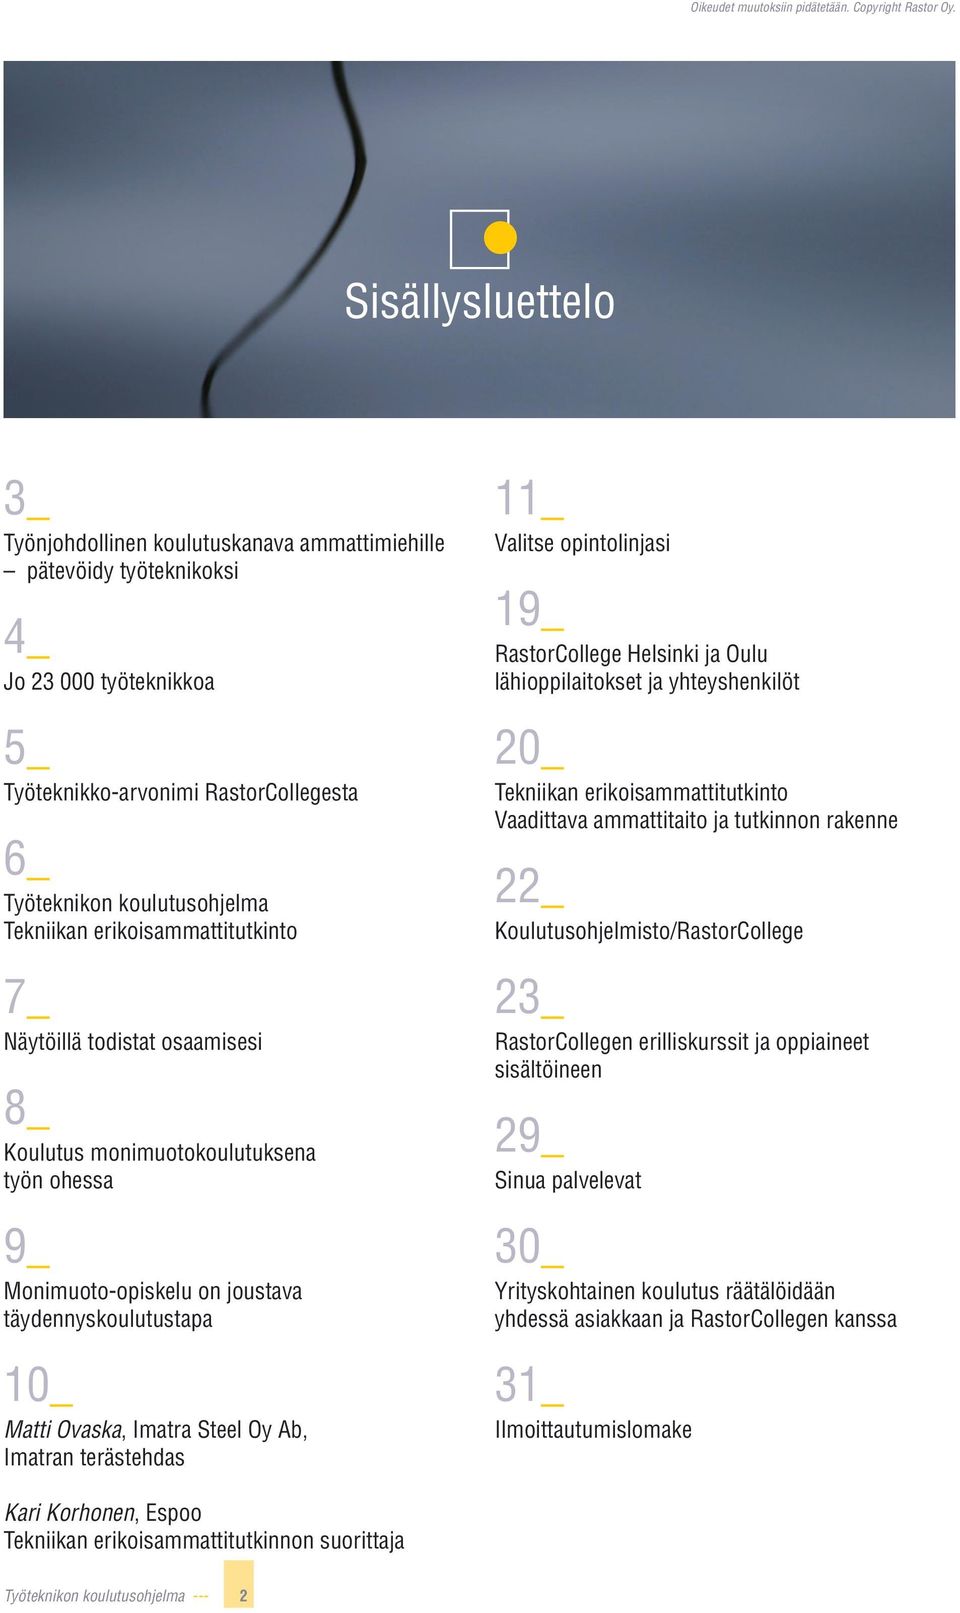 Imatran terästehdas 11_ Valitse opintolinjasi 19_ RastorCollege Helsinki ja Oulu lähioppilaitokset ja yhteyshenkilöt 20_ Tekniikan erikoisammattitutkinto Vaadittava ammattitaito ja tutkinnon rakenne